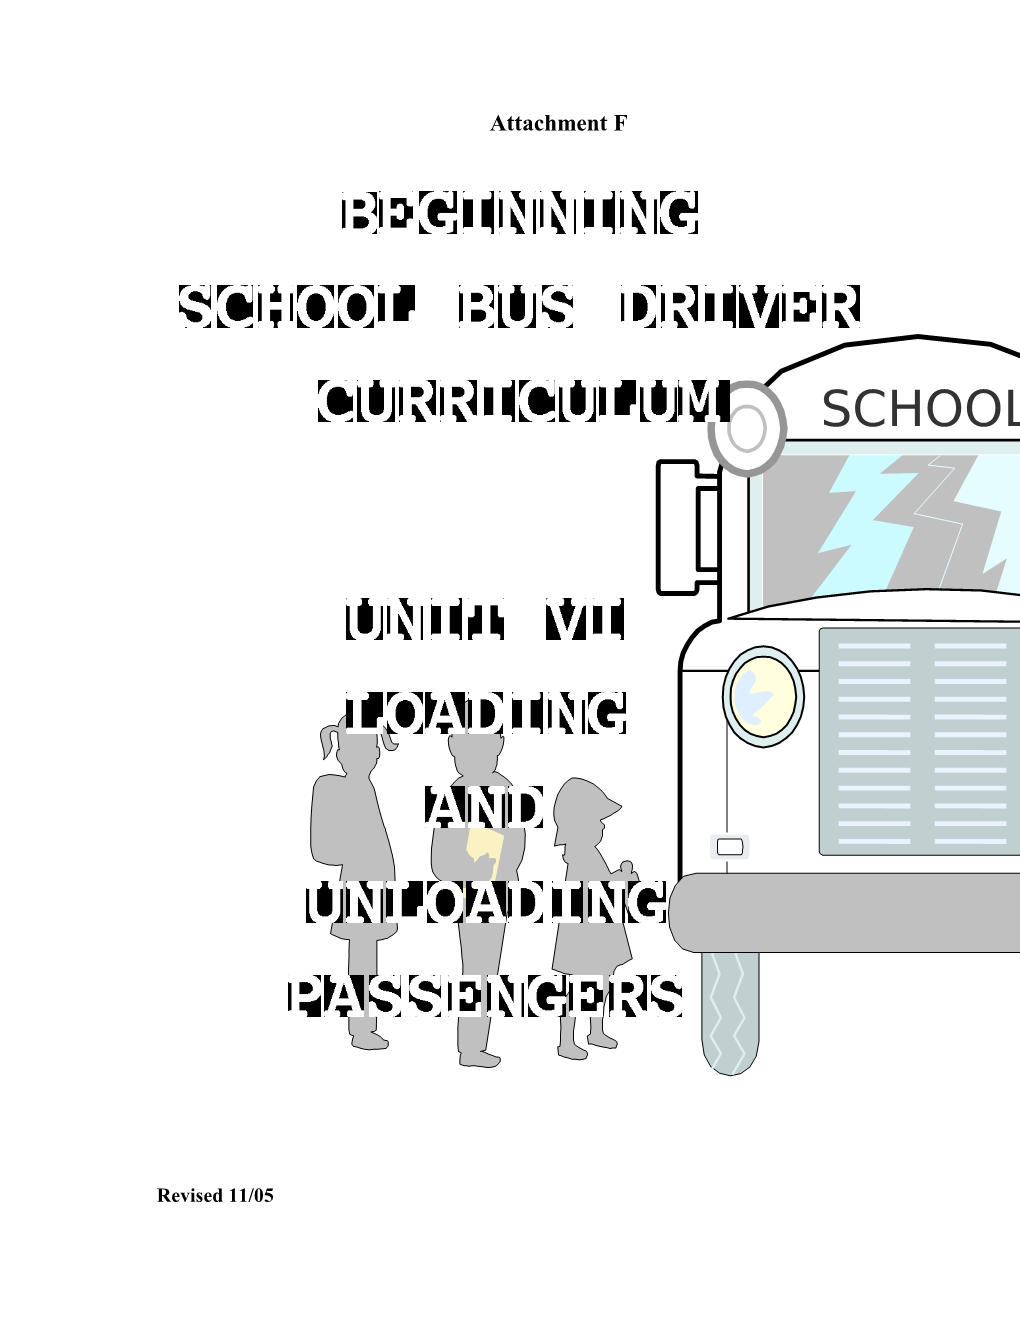 Beginning School Bus Driver Curriculum Unit VI